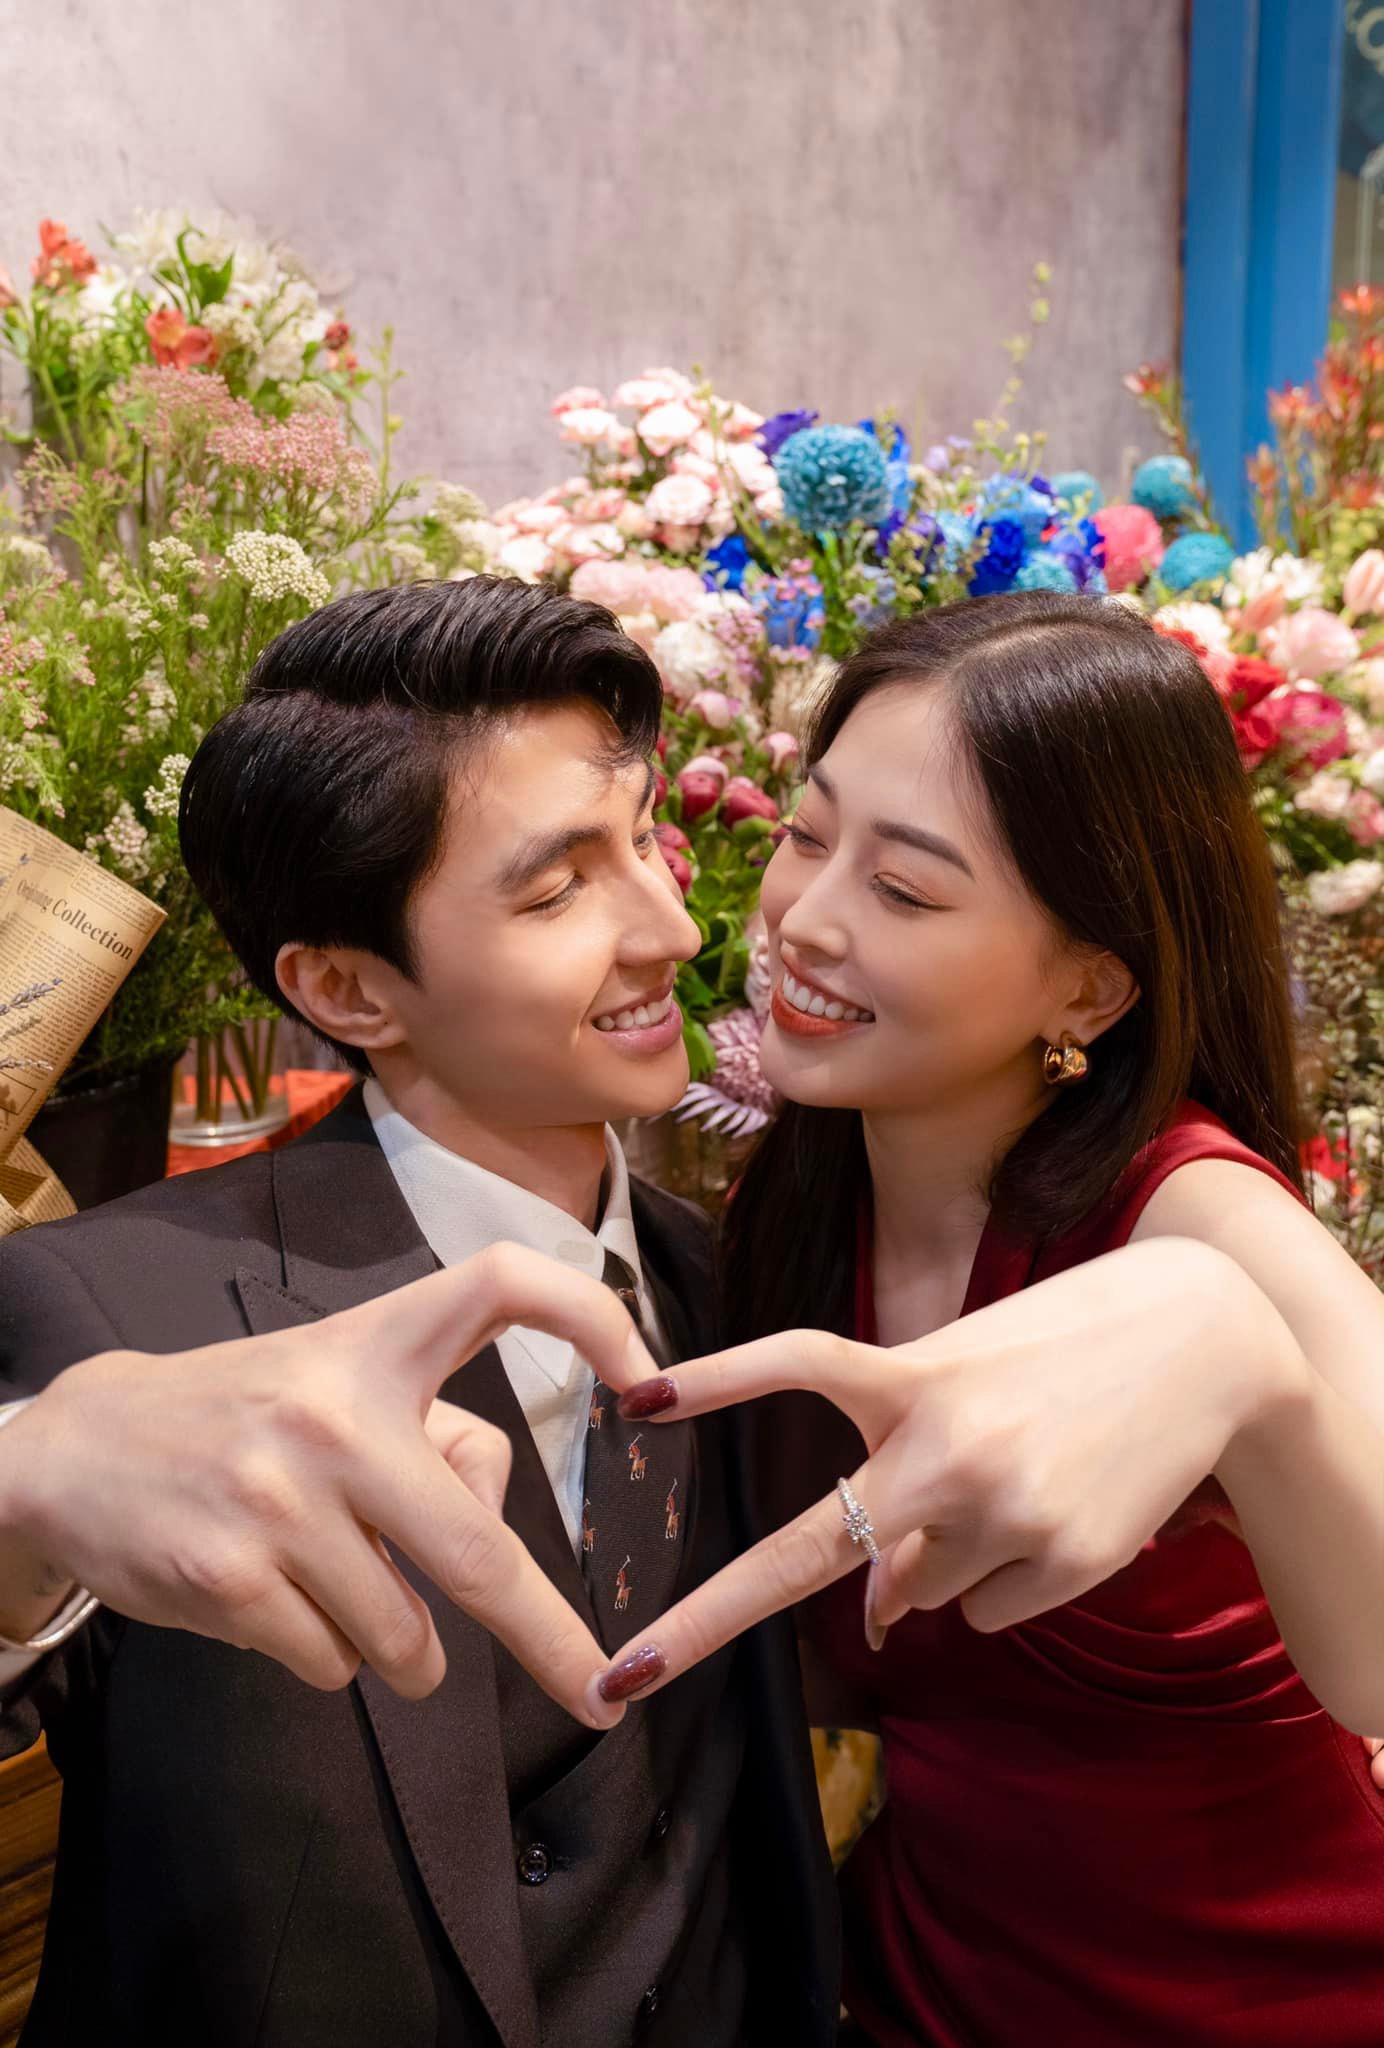 Những đám cưới cận kề của Vbiz: Bình An - Phương Nga, Liêu Hà Trinh và bạn trai Việt kiều cùng lên xe hoa